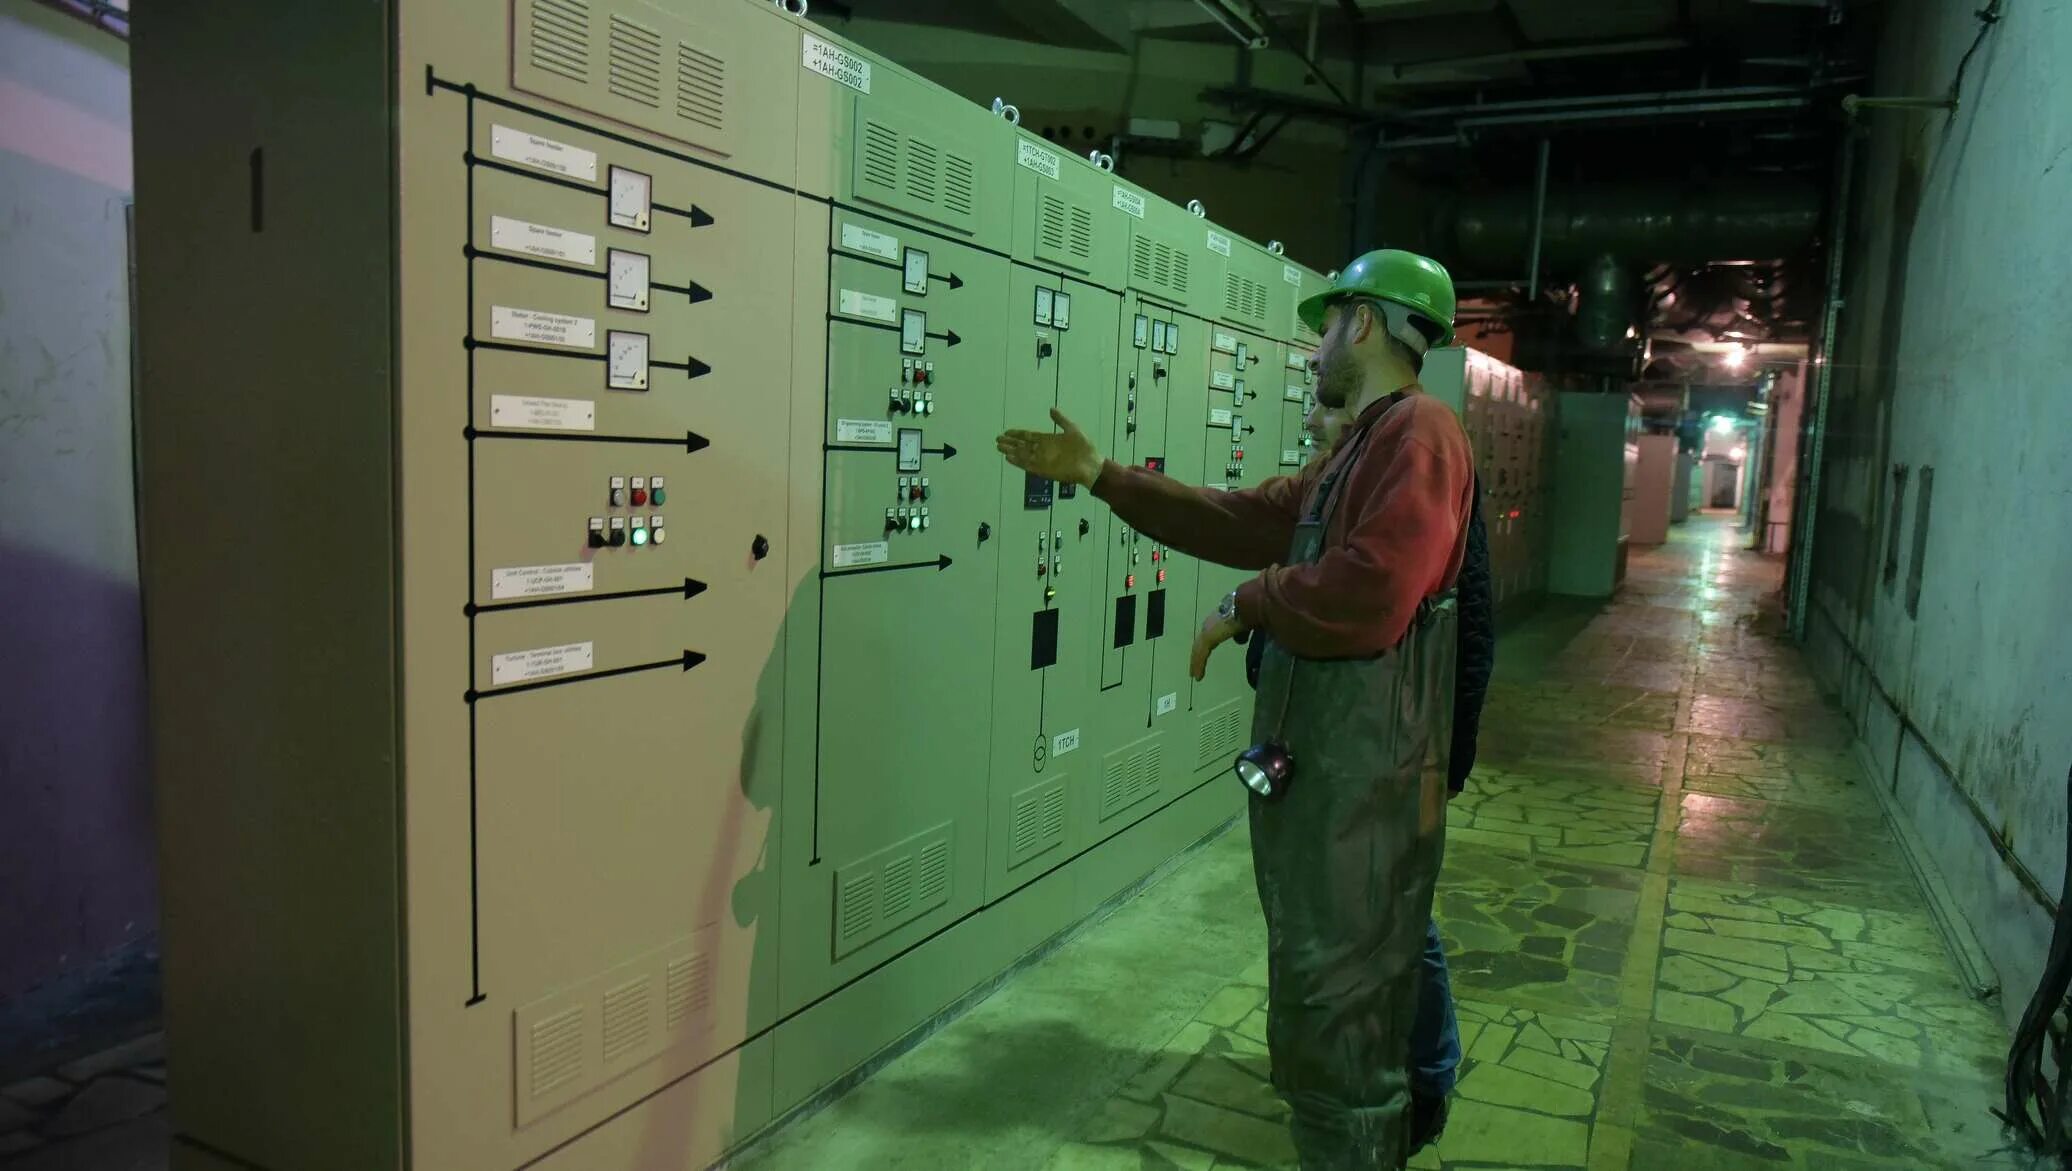 Отключение электроэнергии в абхазии. Технологический тоннель Ингур ГЭС Абхазия. Начальник Ингур ГЭС. Перепадной ГЭС 3 Ингур. Откуда в Абхазии электроэнергия.